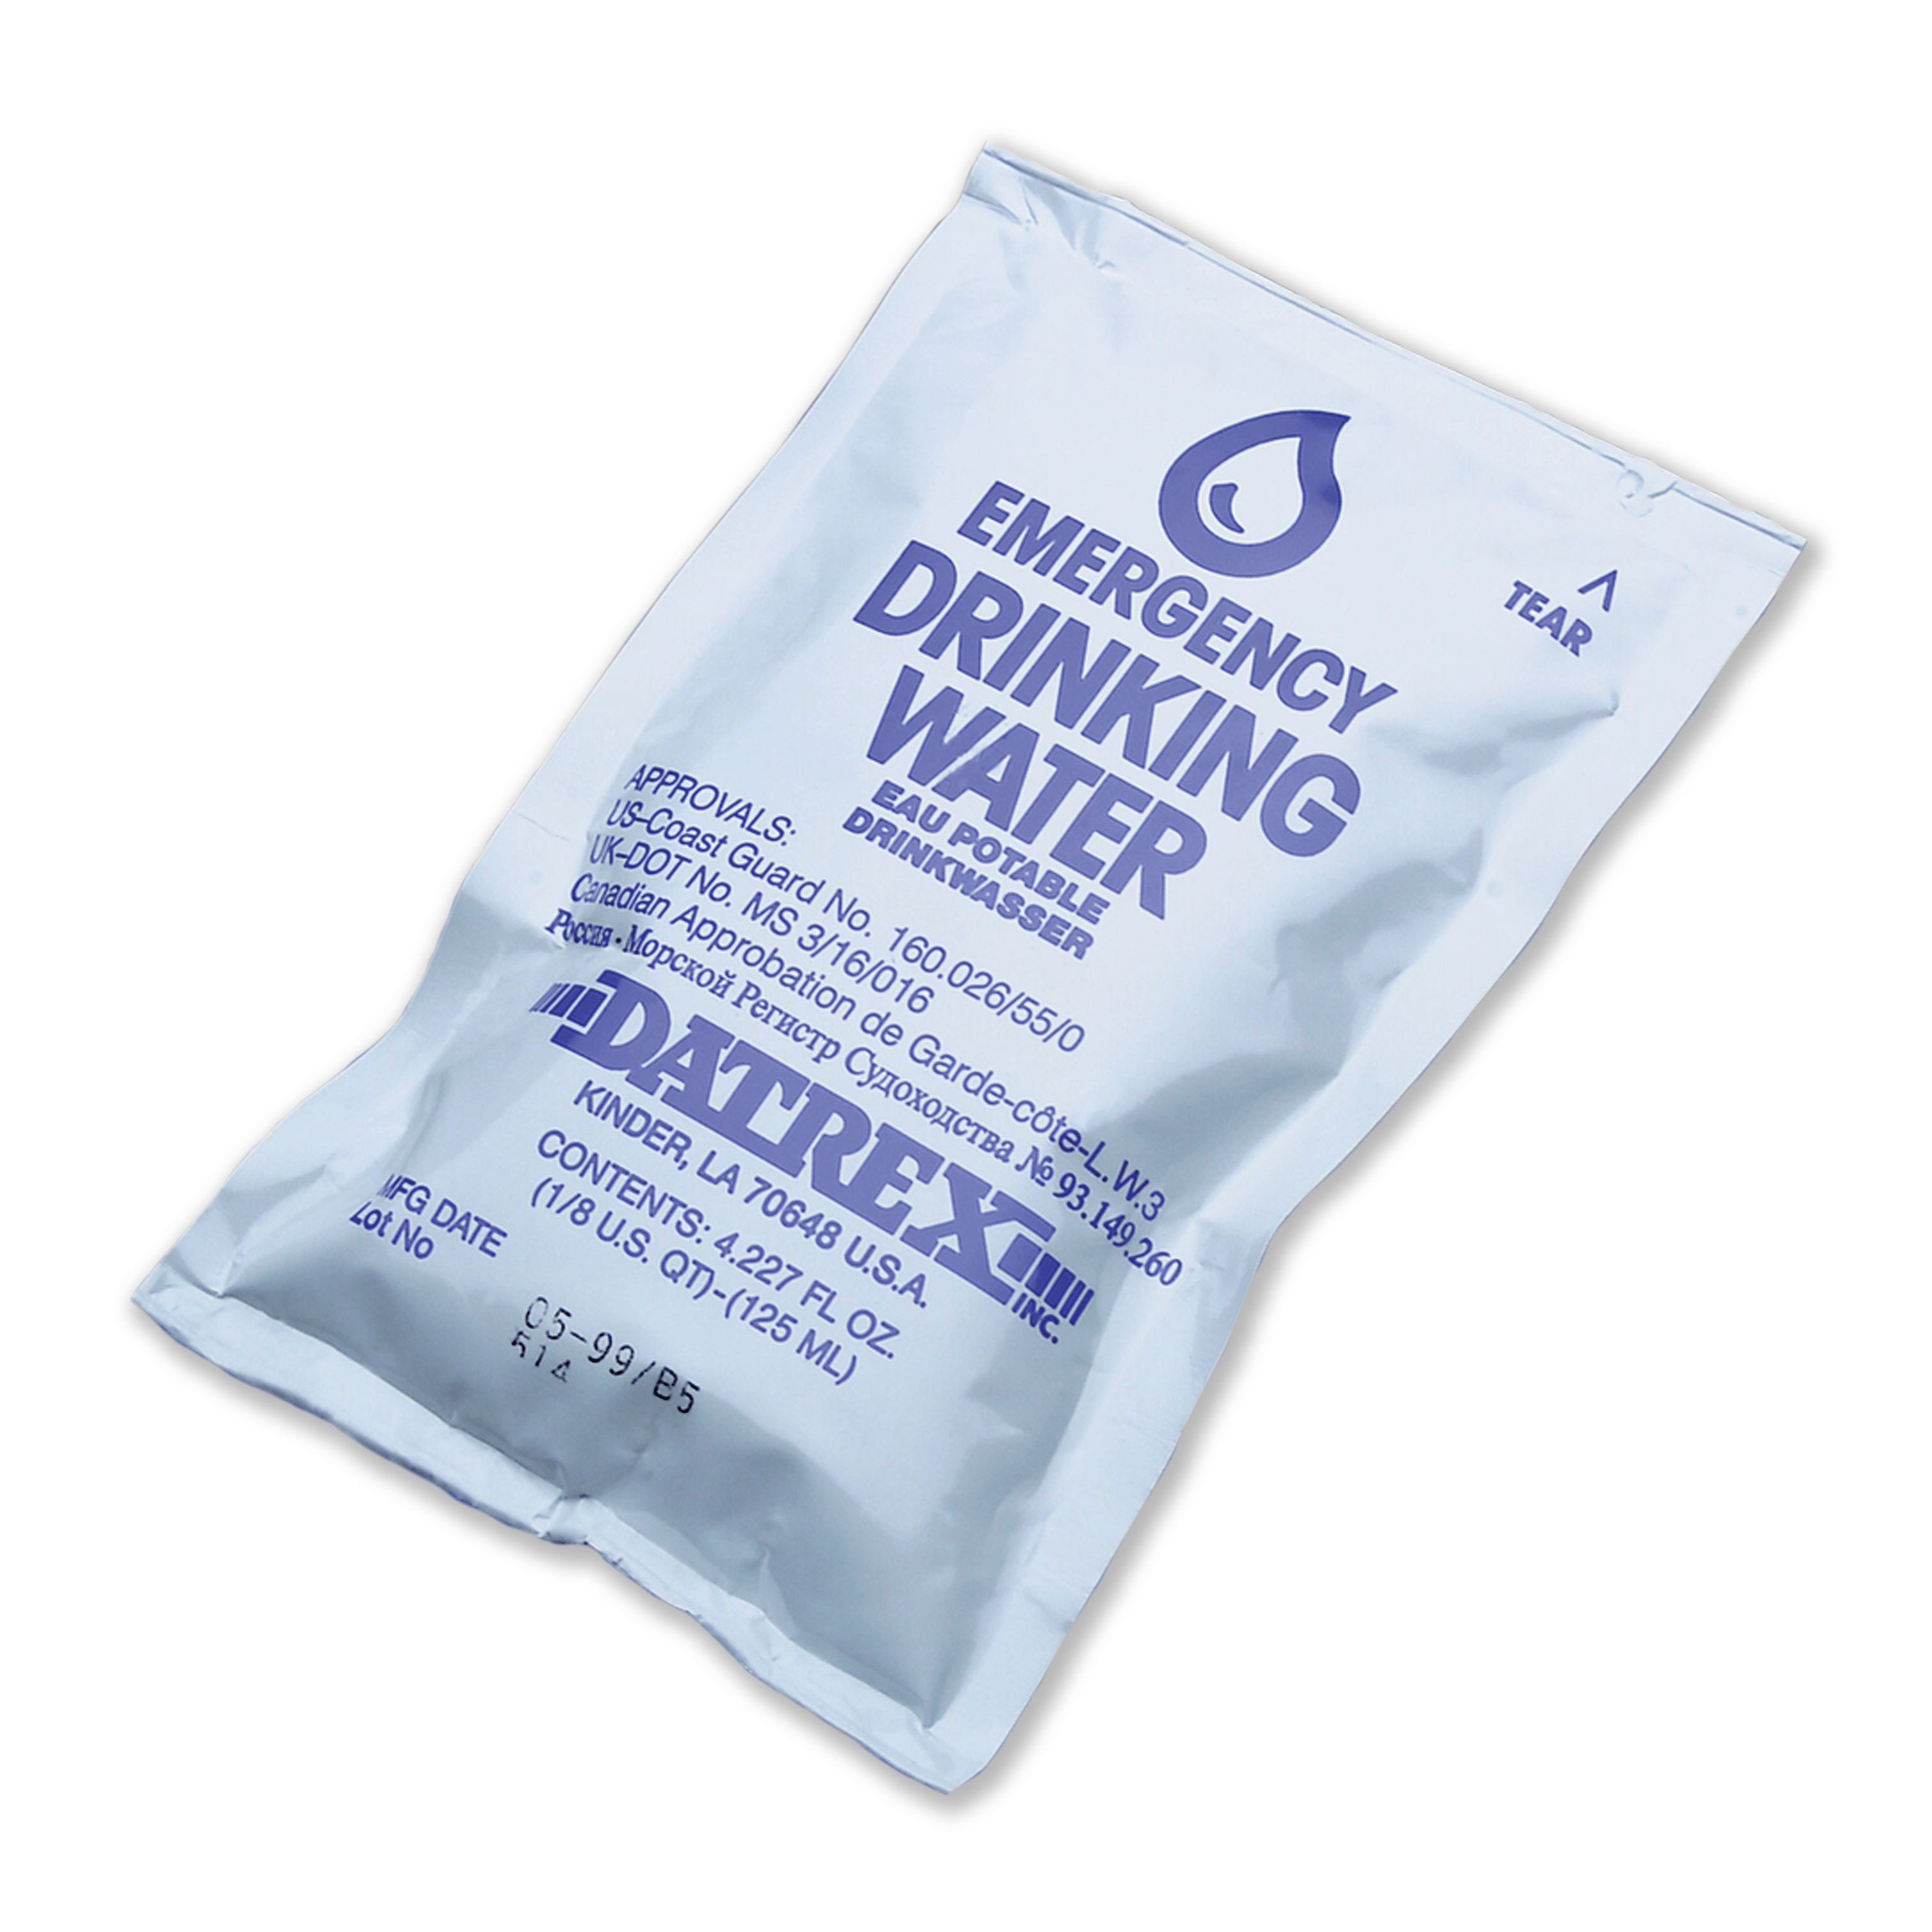 Datrex Emergency Overwrap Water 8 Liters, 64 Bags Per Case, 125 ML Per Bag